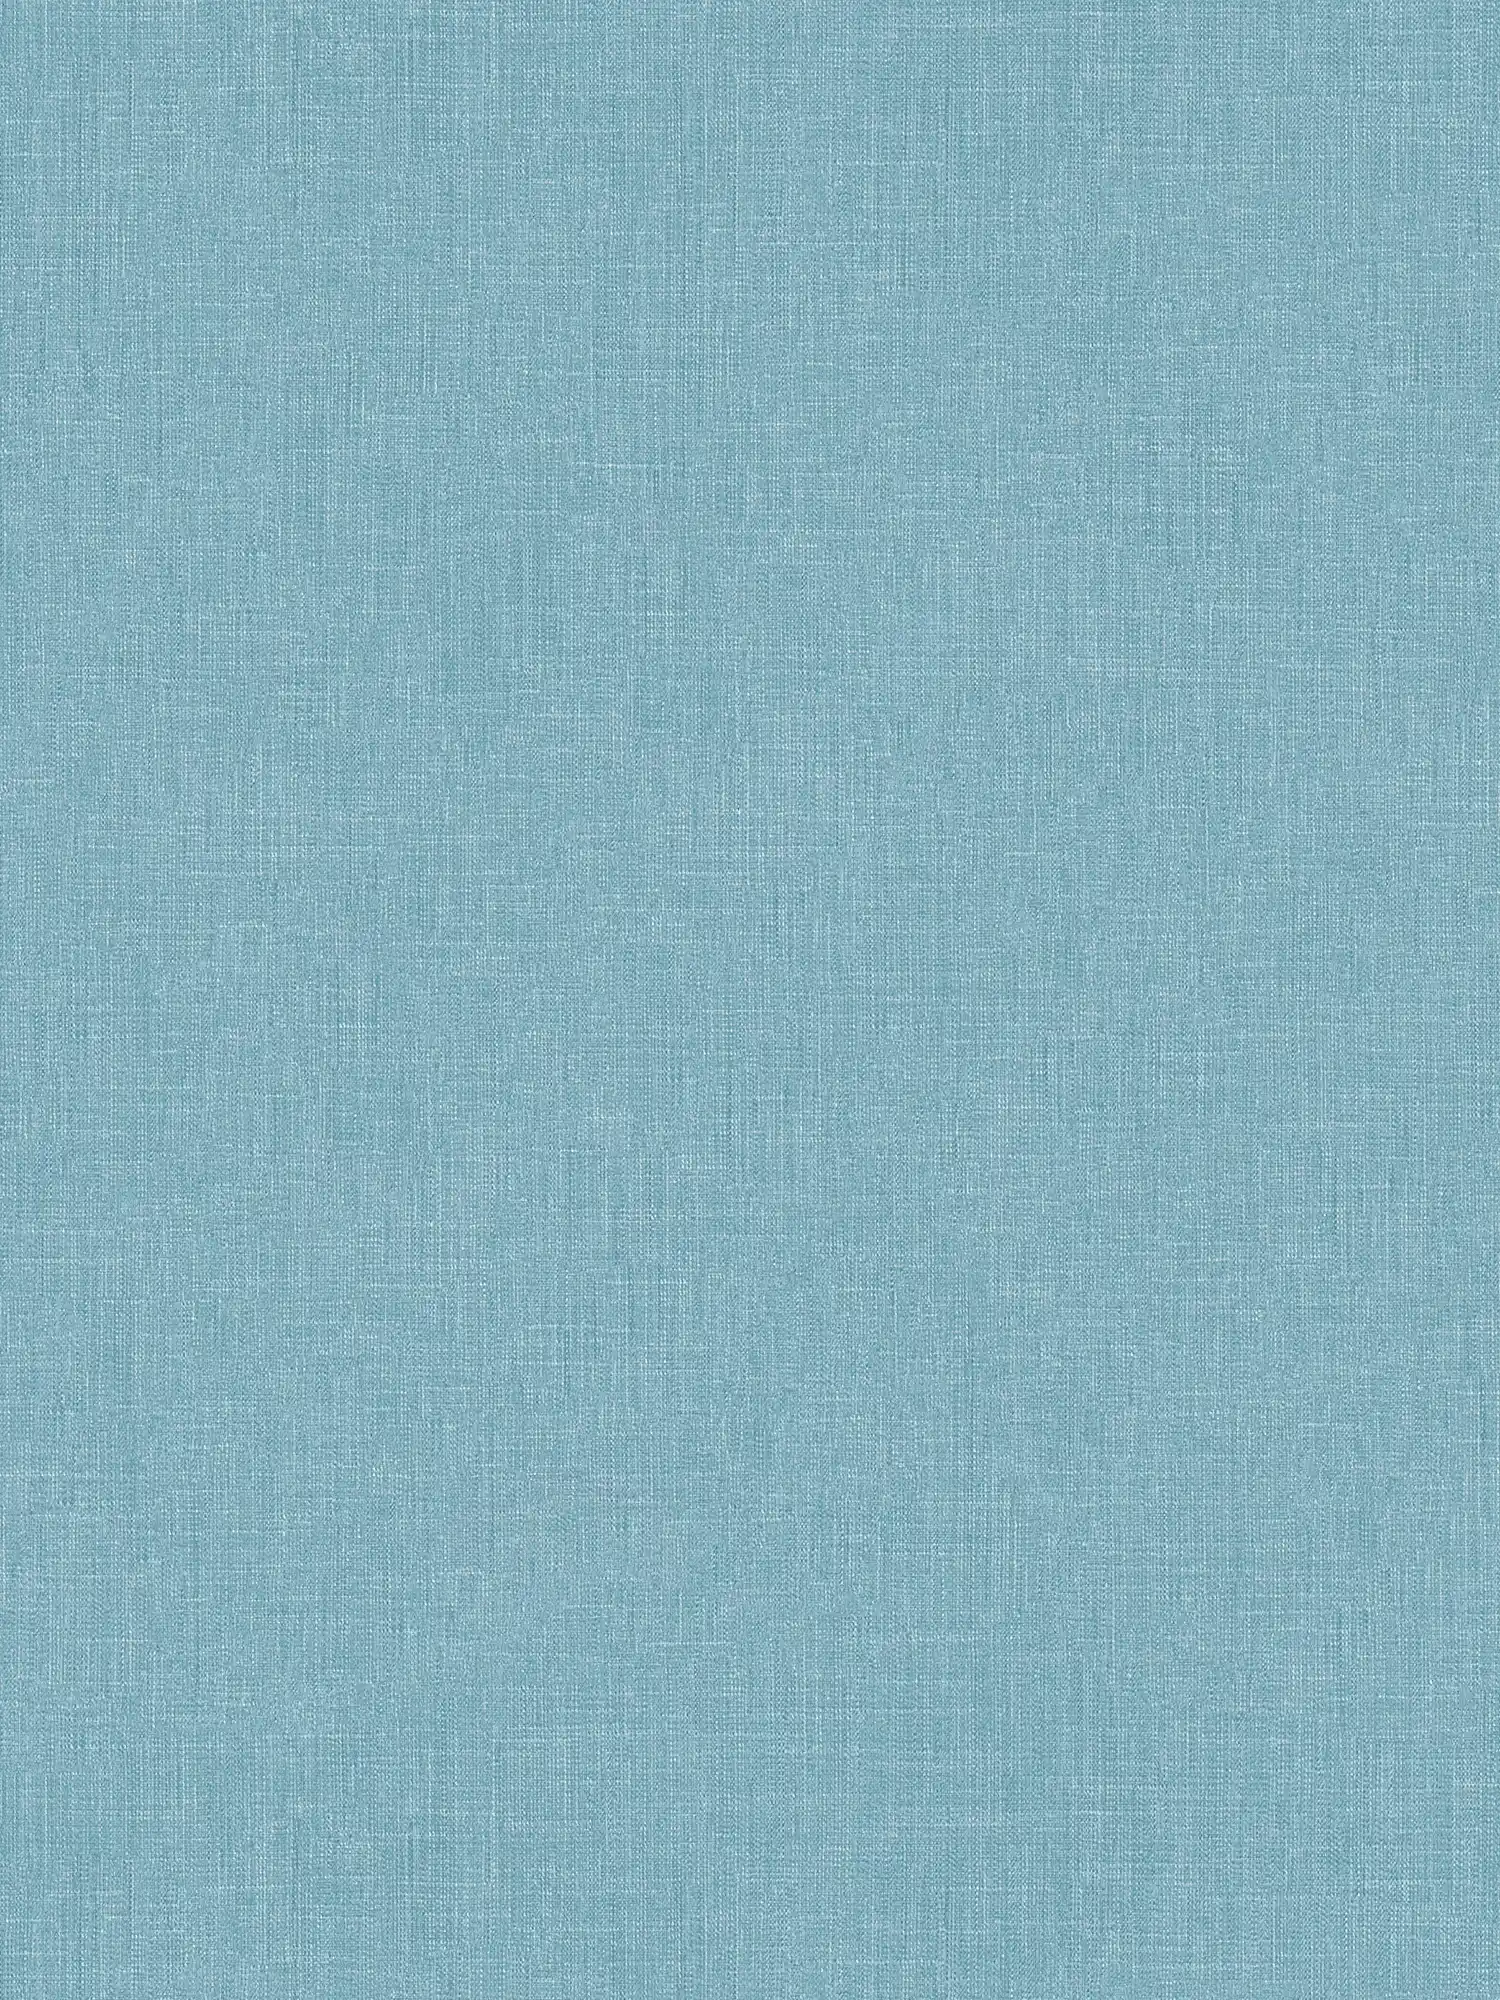 Vliesbehang blauw gevlekt met textielstructuur in boucléstijl
